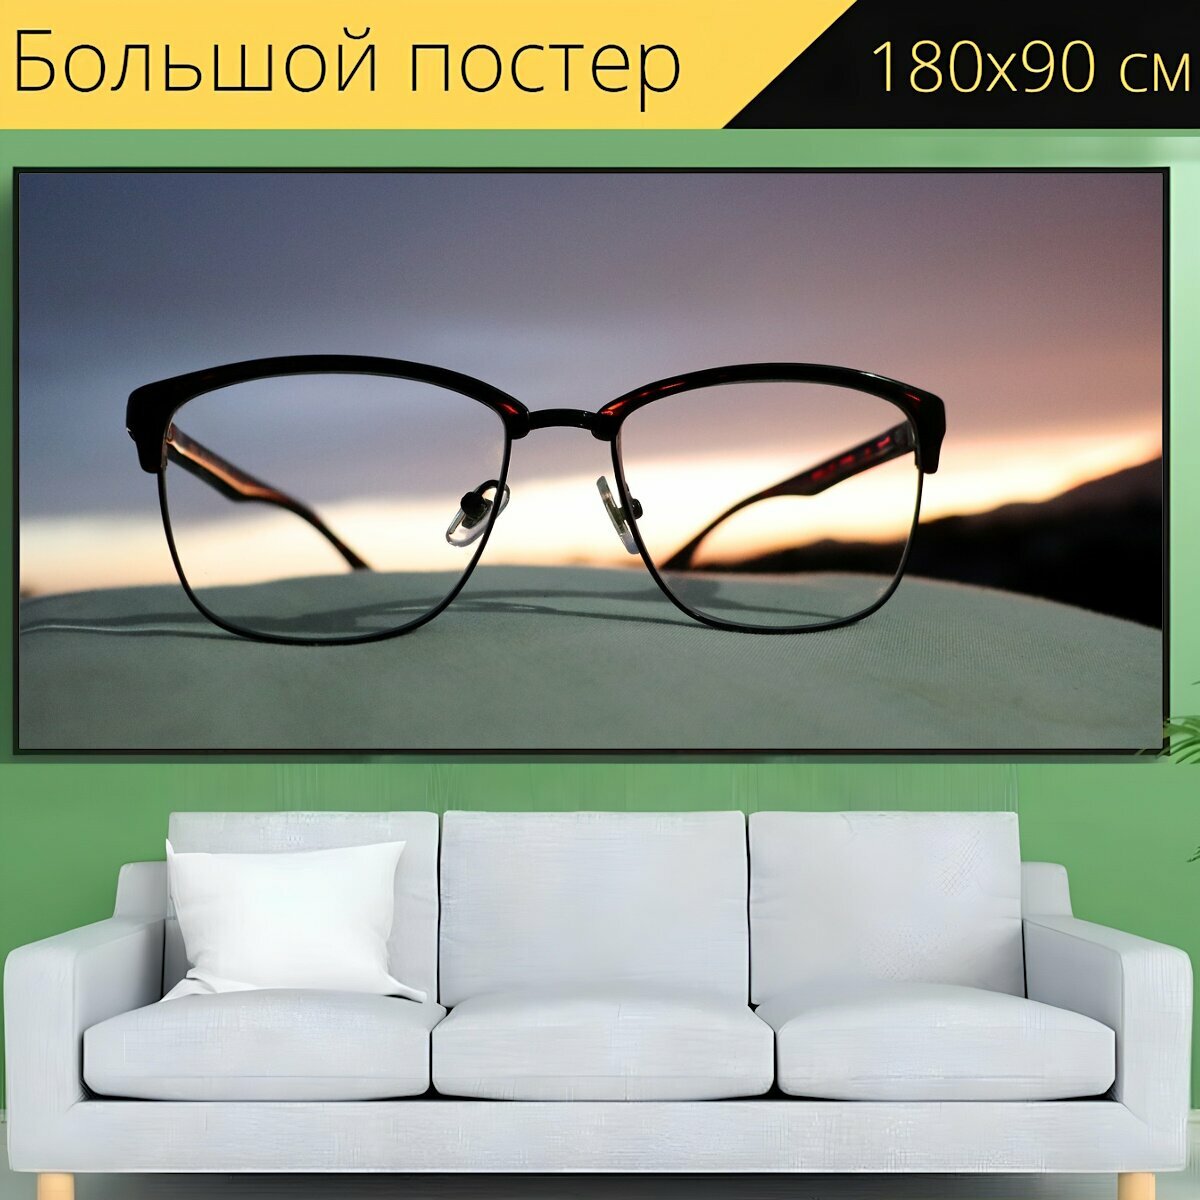 Большой постер "Очки, очки для чтения, зрение" 180 x 90 см. для интерьера